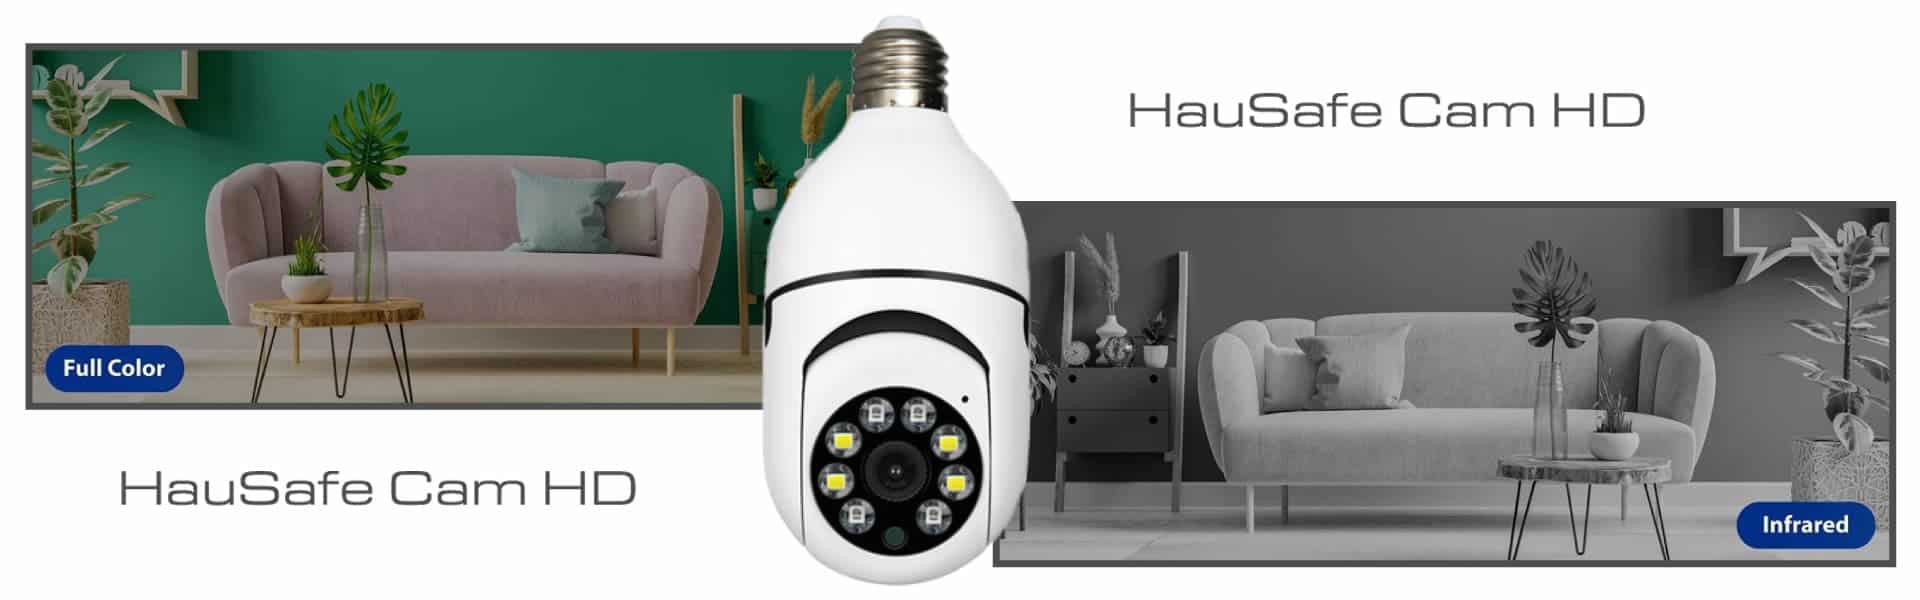 HauSafe Cam HD, ביקורות וחוות דעת